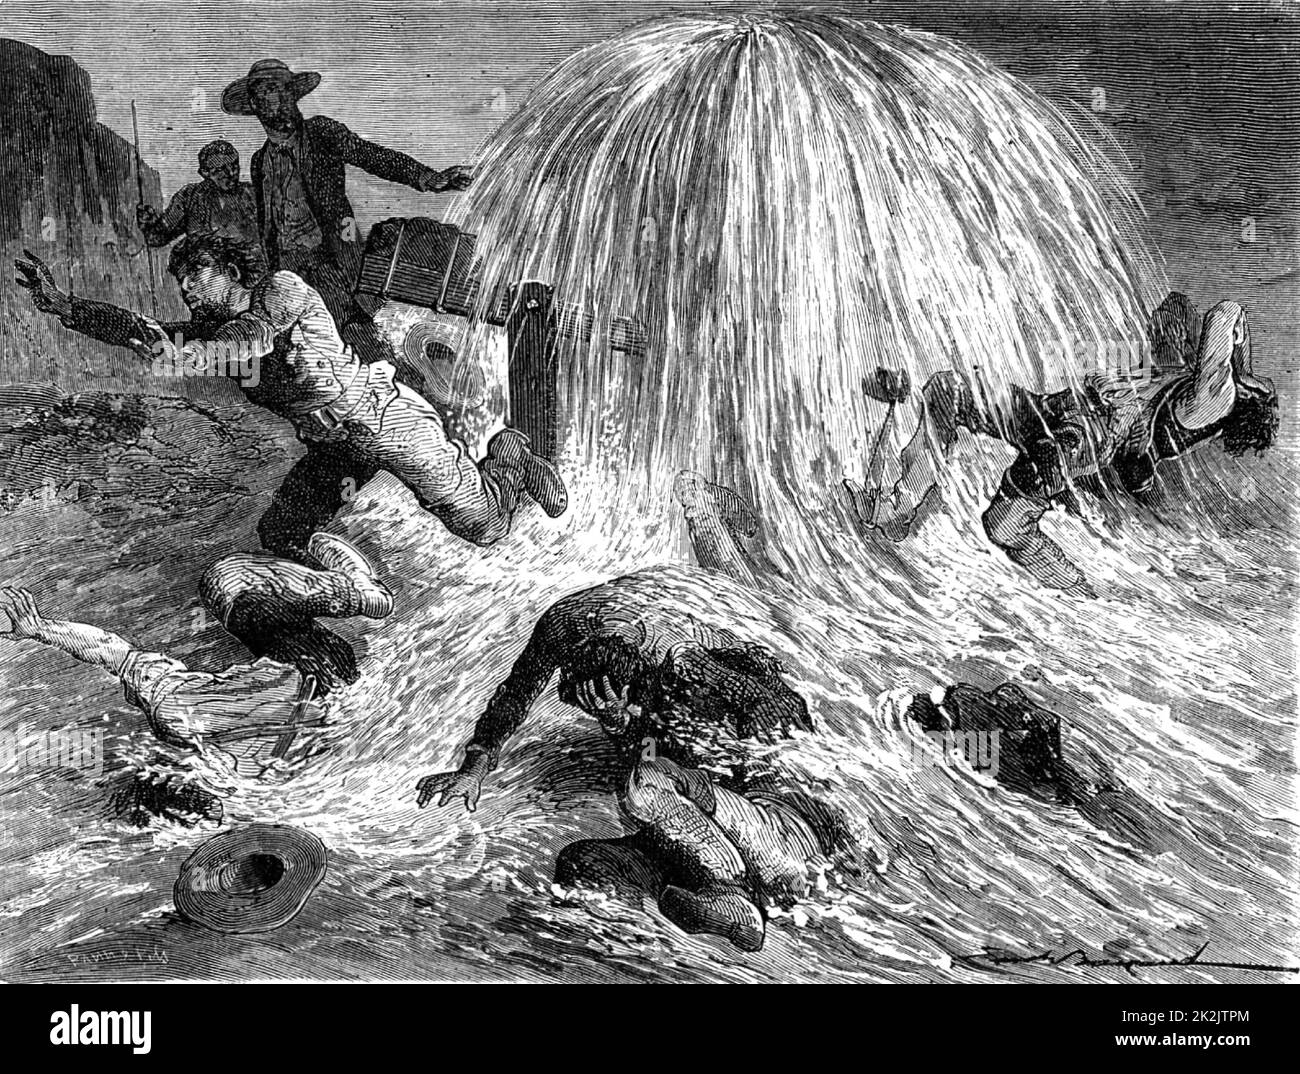 Edwin Laurentine Drake (1810-1880), amerikanischer Ölpionier, stampfend Öl in der Nähe von Oil Creek, Pennsylvania, 27. August 1859. Stich aus 'Les Merveilles de la Science' von Louis Figuier (Paris, c1870). n Stockfoto